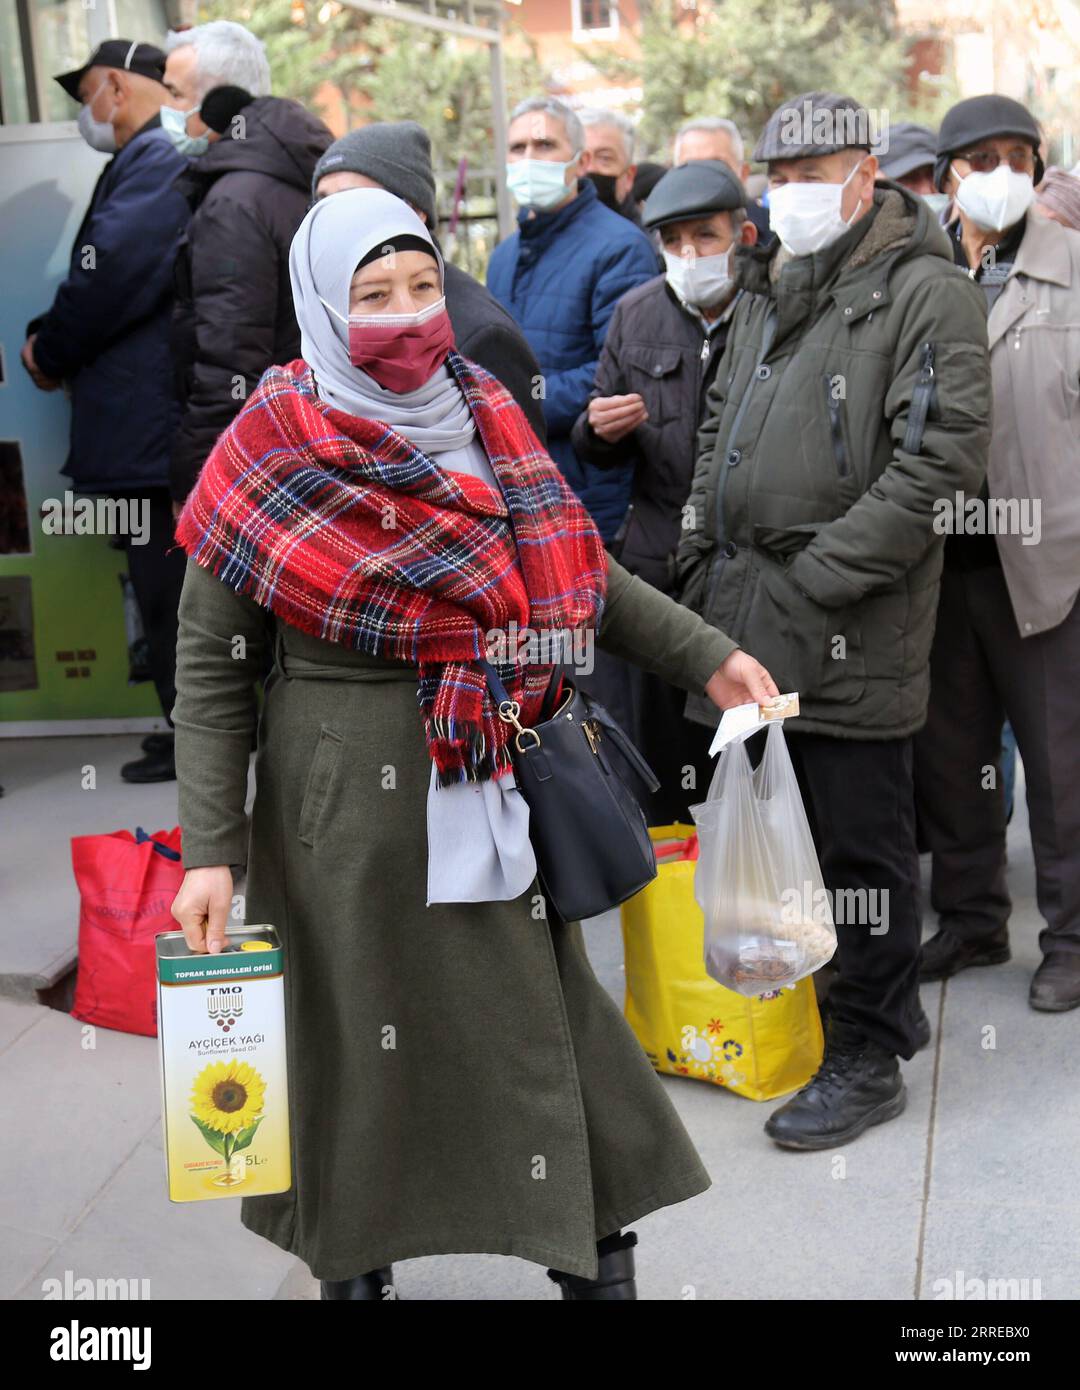 220217 -- ANKARA, 17. Februar 2022 -- Eine Frau geht, nachdem sie am 17. Februar 2022 in Ankara, Türkei, Haushaltsnahrungsmittel gekauft hat. Die jährliche Inflation in der Türkei stieg im Januar auf ein 20-Jahres-hoch von 48,69 Prozent, getrieben durch den Sturz der türkischen Lira im letzten Jahr, der die Kaufkraft der Bürger schwer traf. Foto von /Xinhua TÜRKEI-ANKARA-INFLATION MustafaxKaya PUBLICATIONxNOTxINxCHN Stockfoto